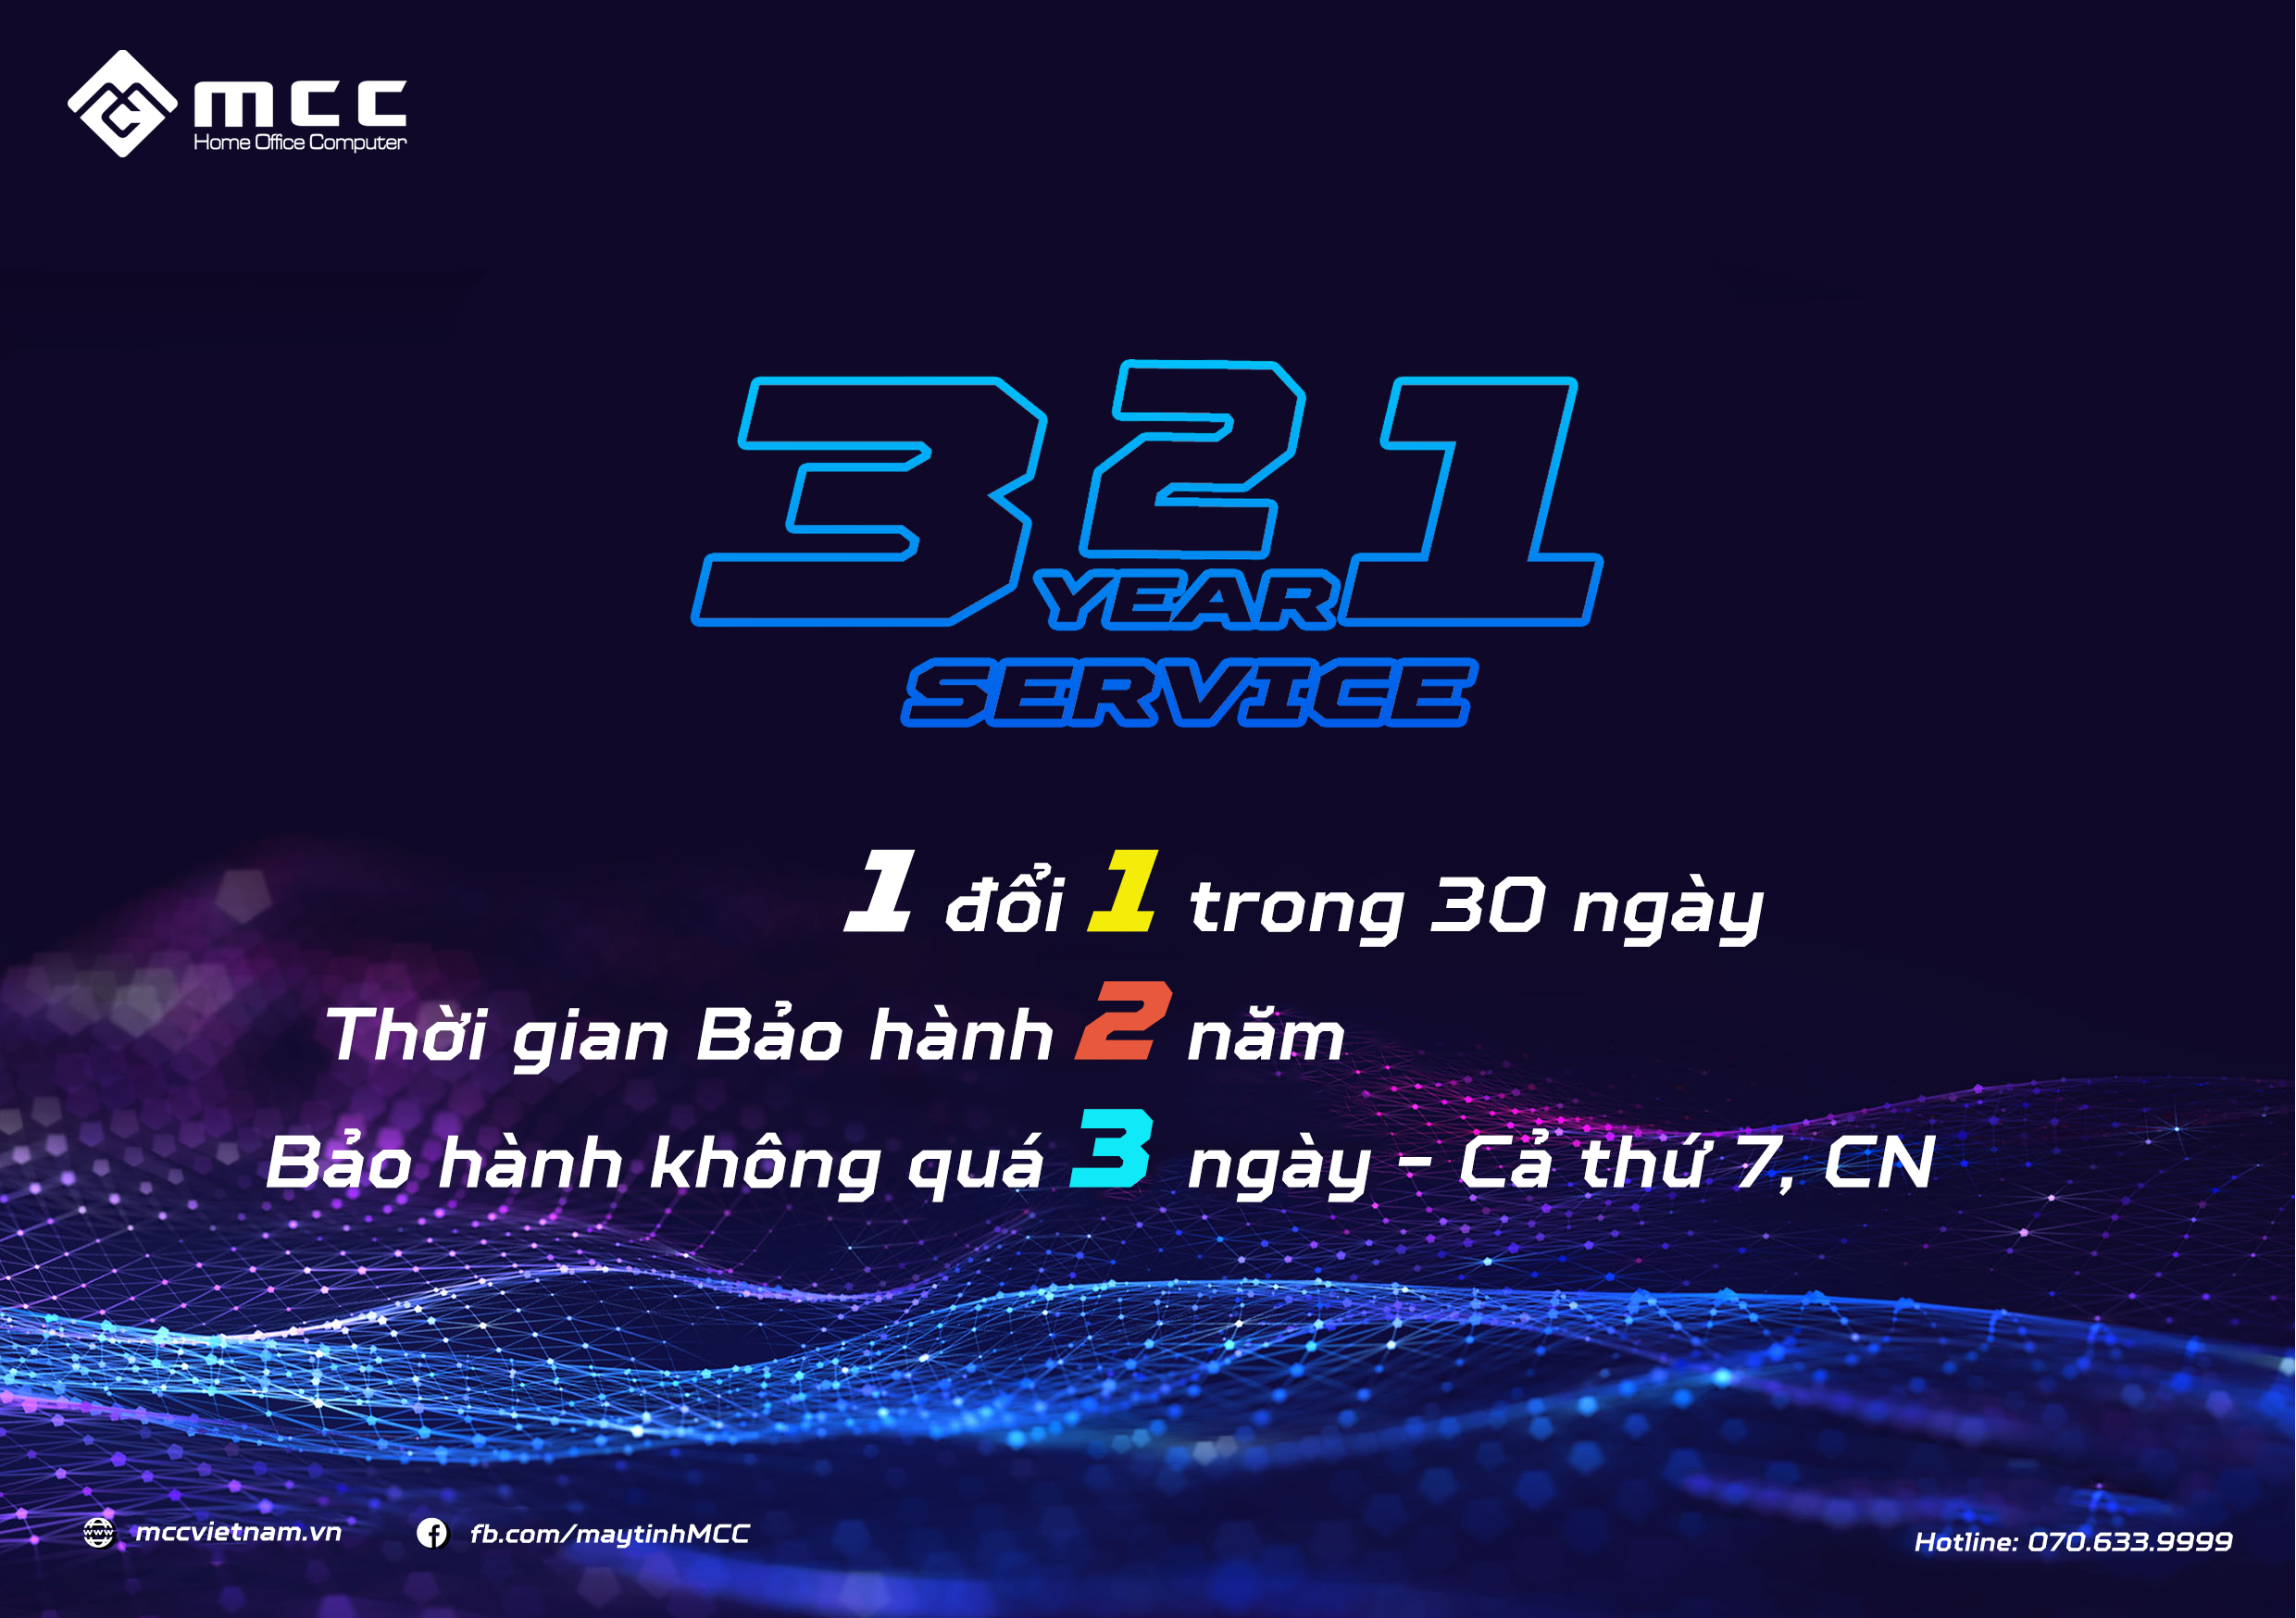 321 là chính sách bảo hành đặc biệt của MCC Việt Nam